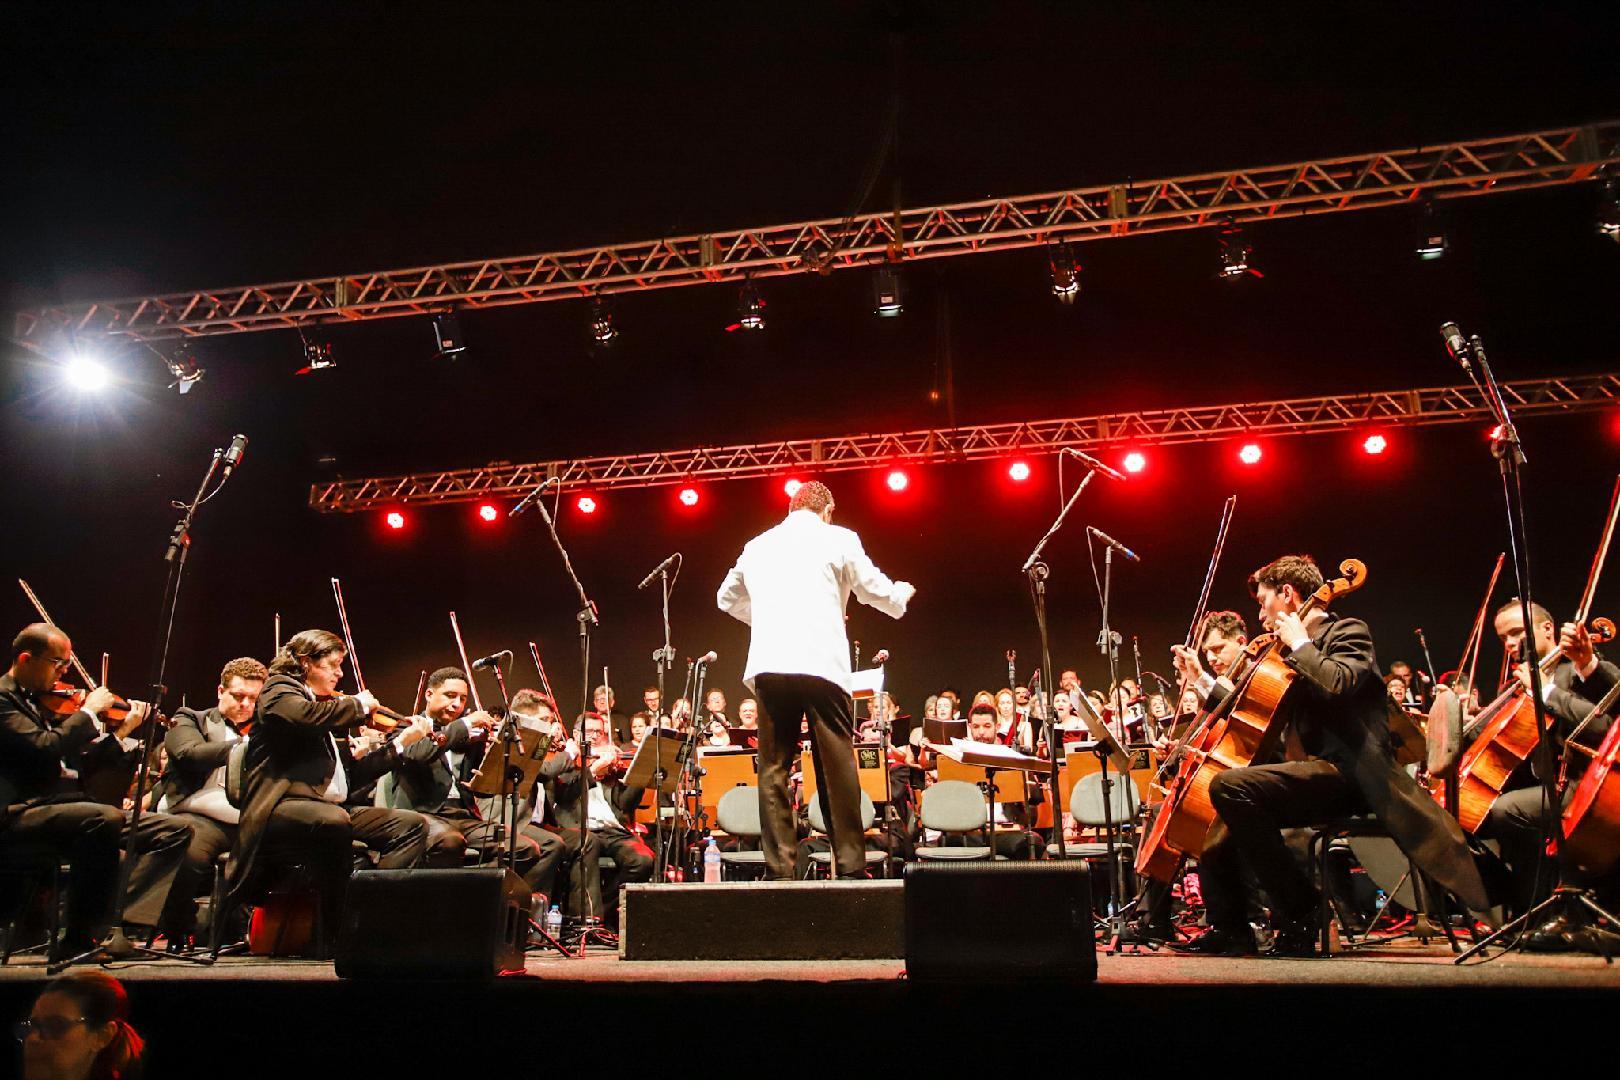 Orquestra Sinfônica de Ribeirão Preto completou 100 anos